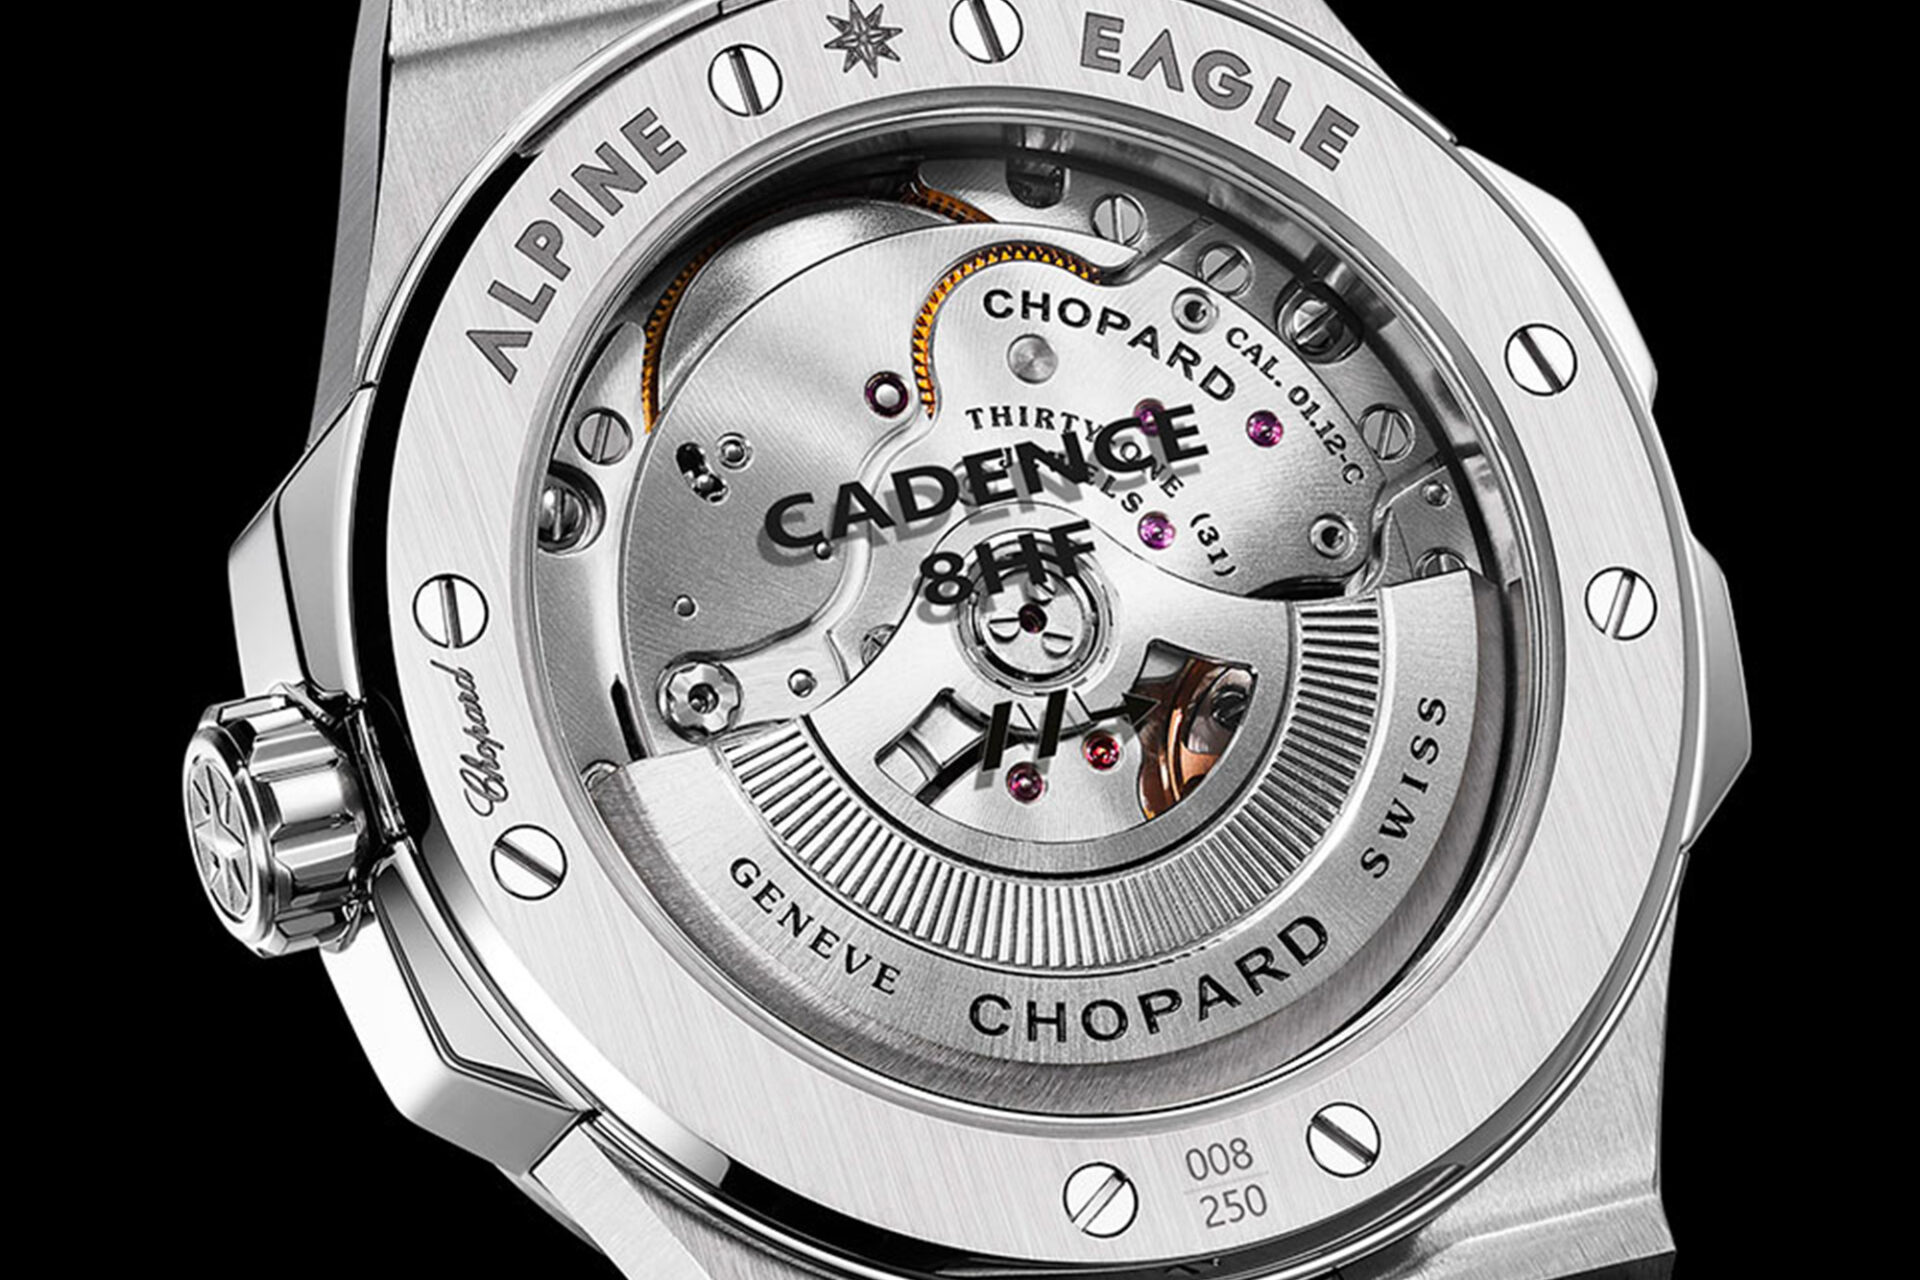 Chopard Alpine Eagle Cadence 8HF